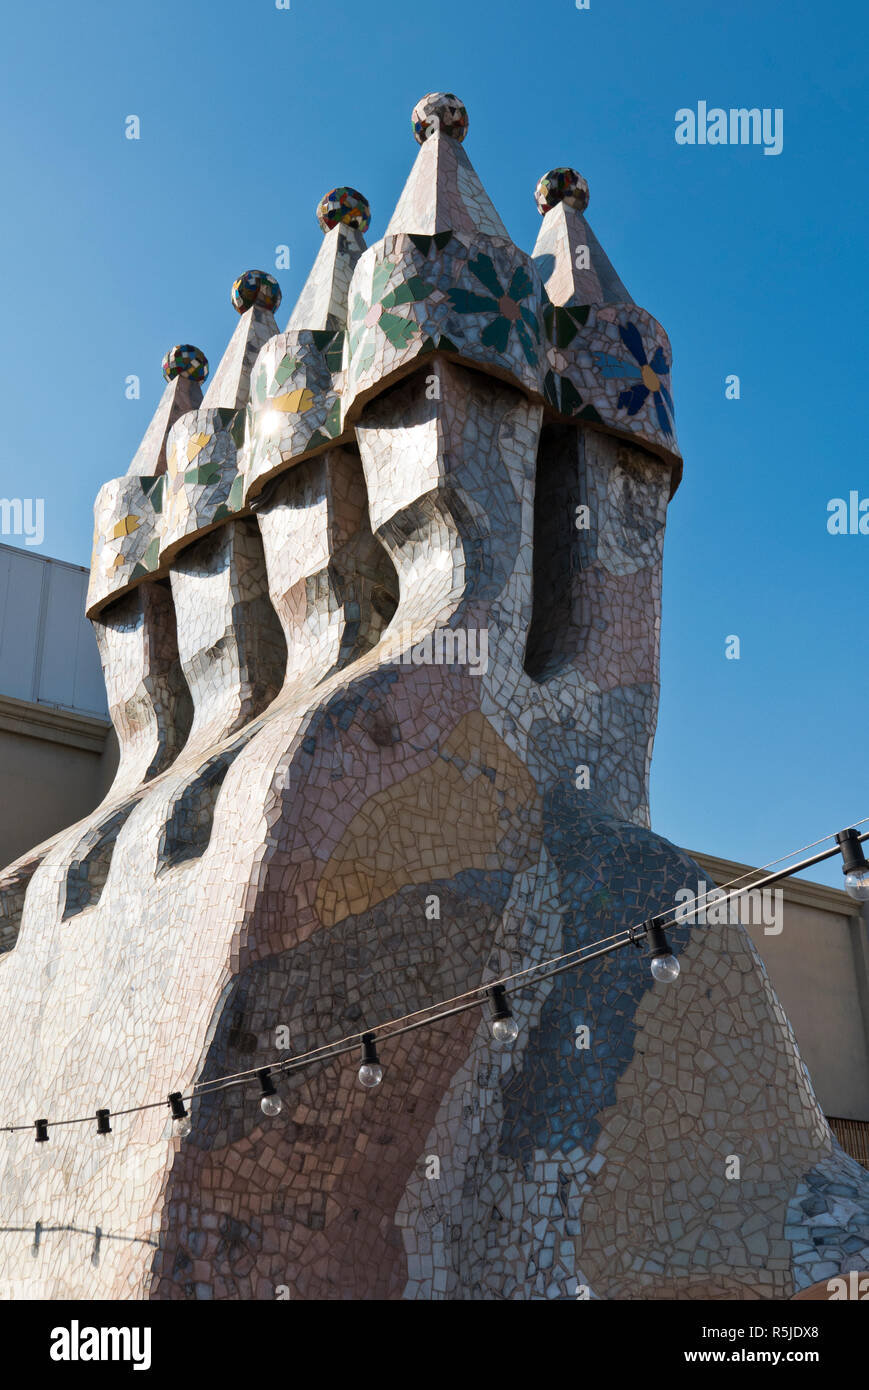 Cheminées sur toit de la casa Batllo bâtiment conçu par Antoni Gaudi, Barcelone, Espagne Banque D'Images